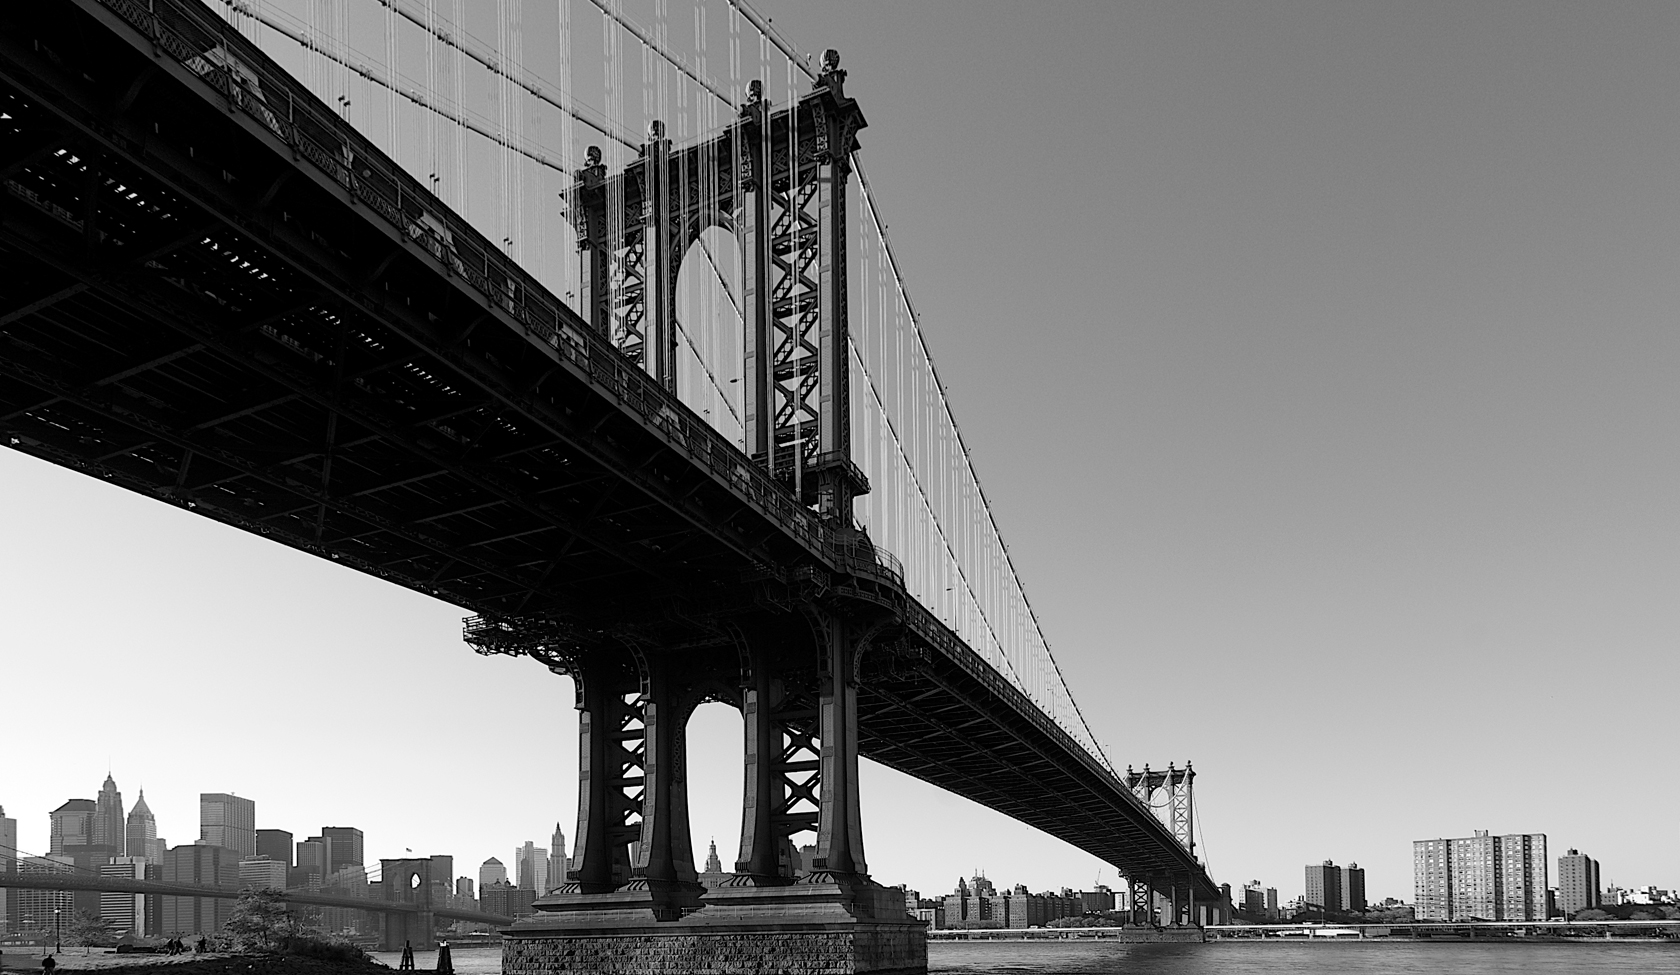 Brooklyn Bridge Suspension Br